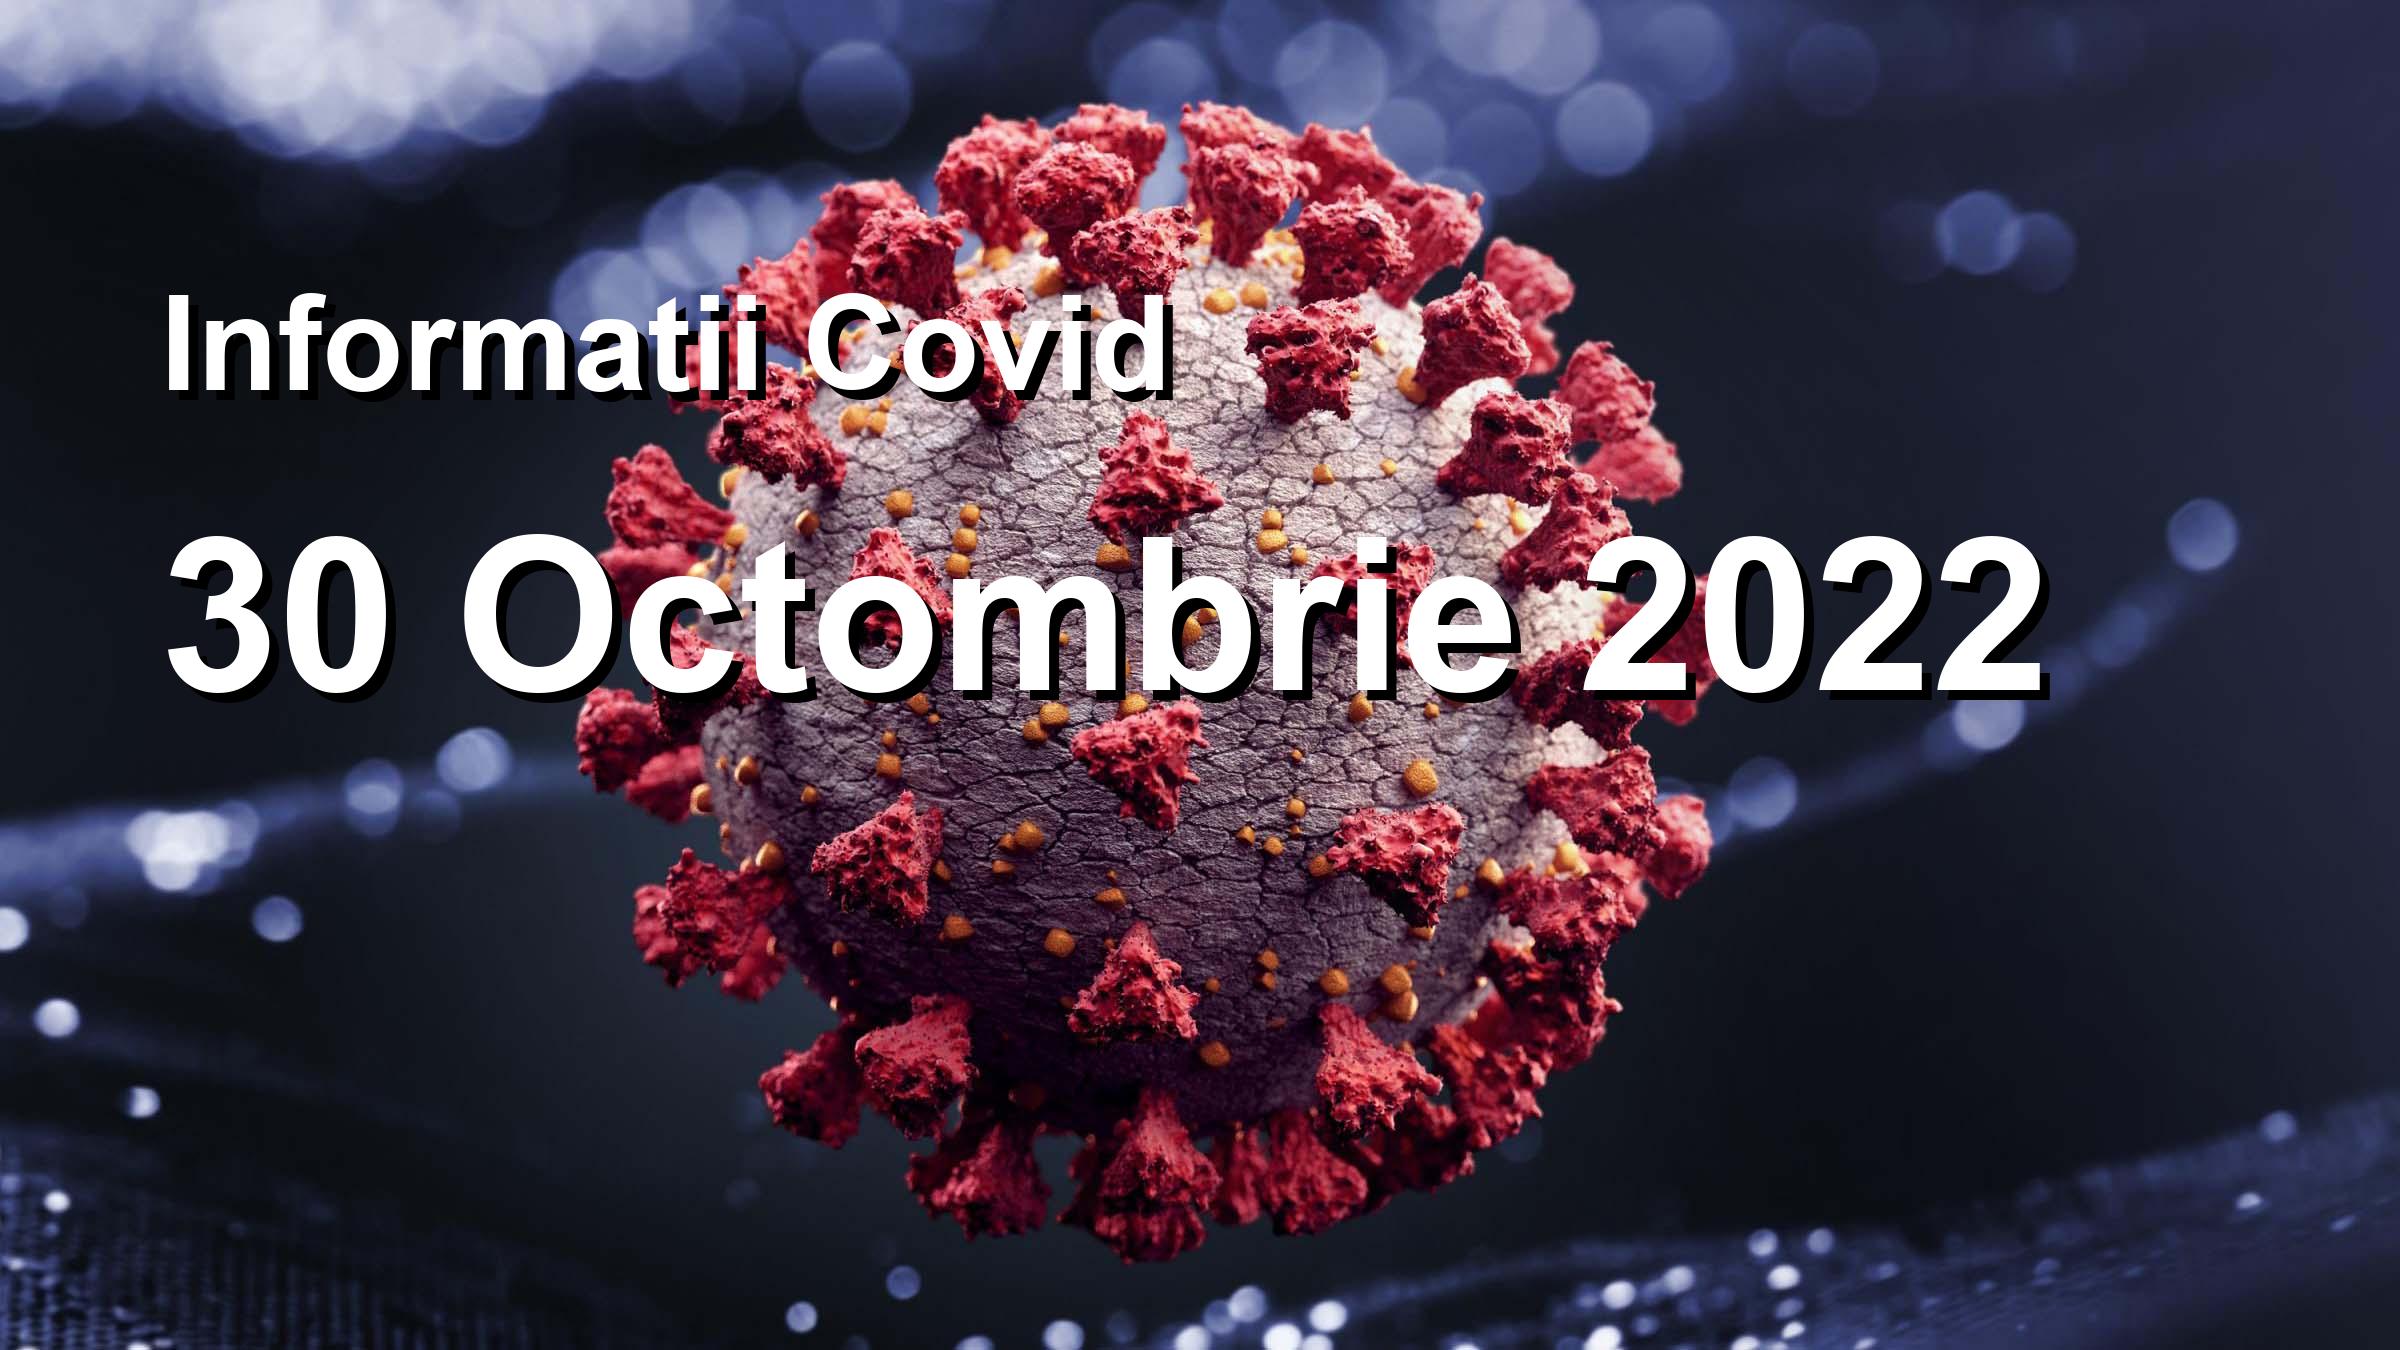 Informatii Covid-19 pentru 30 Octombrie 2022: 209 infectari, 4883 teste. | Coronavirus Romania